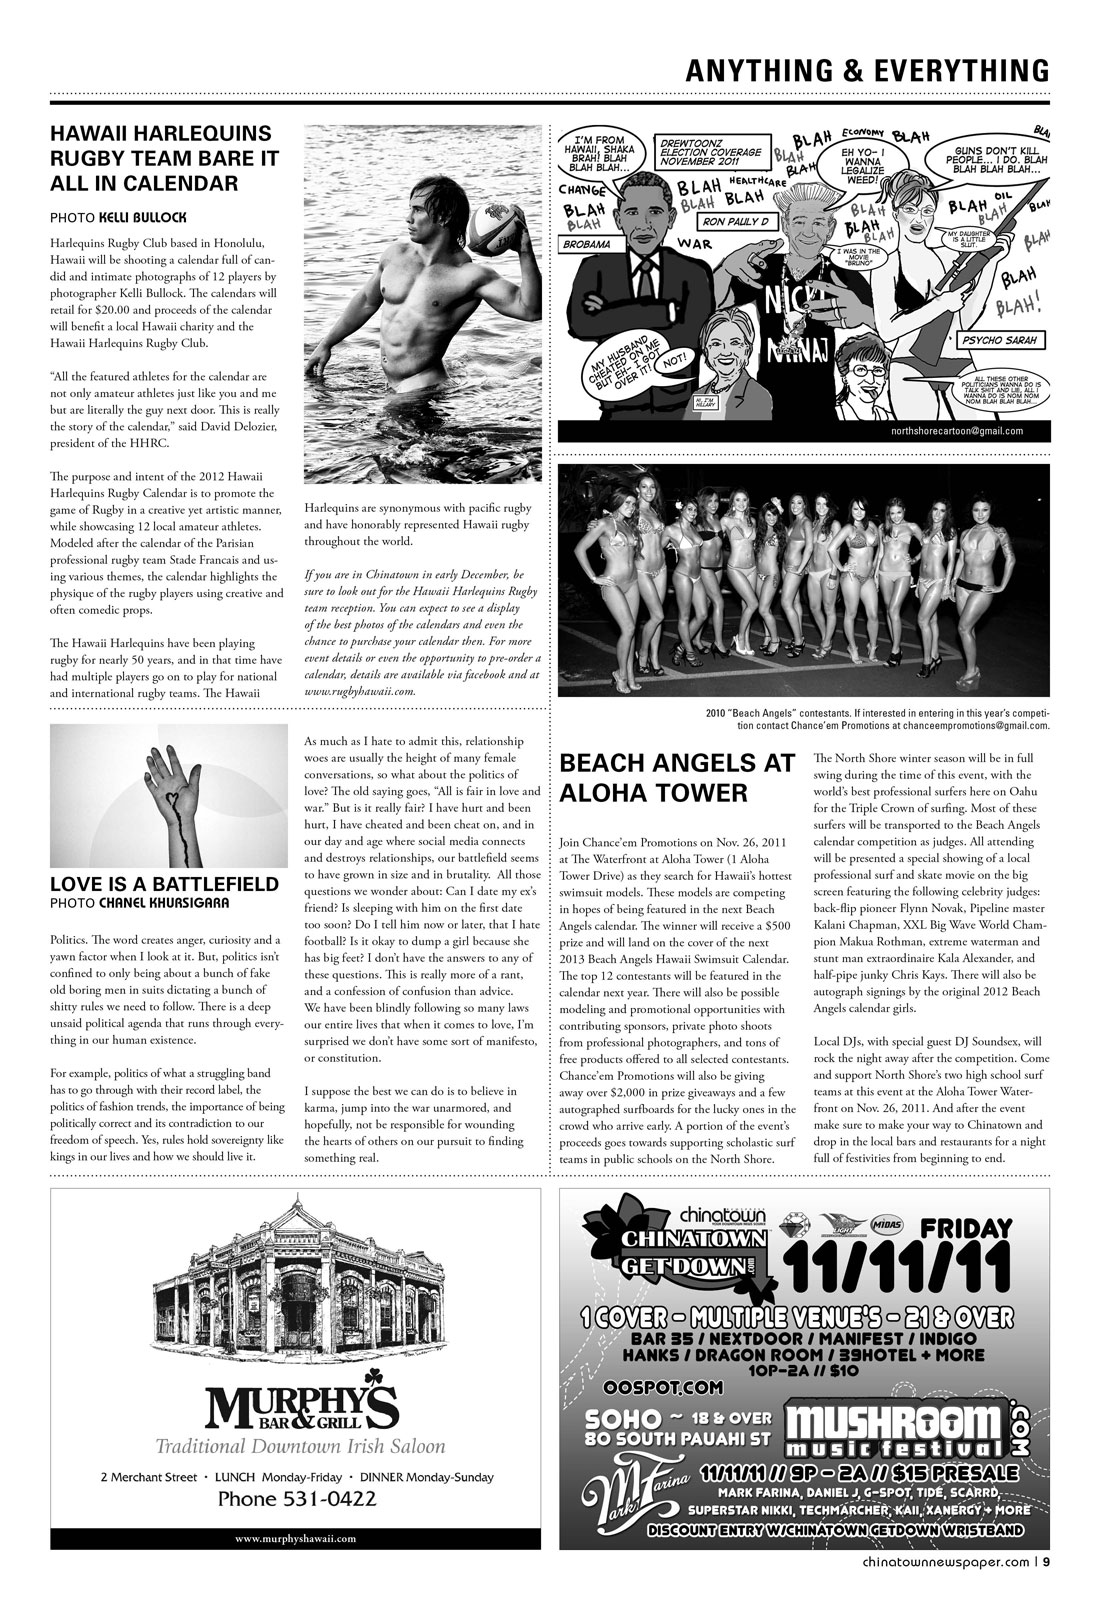 Chinatown Newspaper november 2011 9